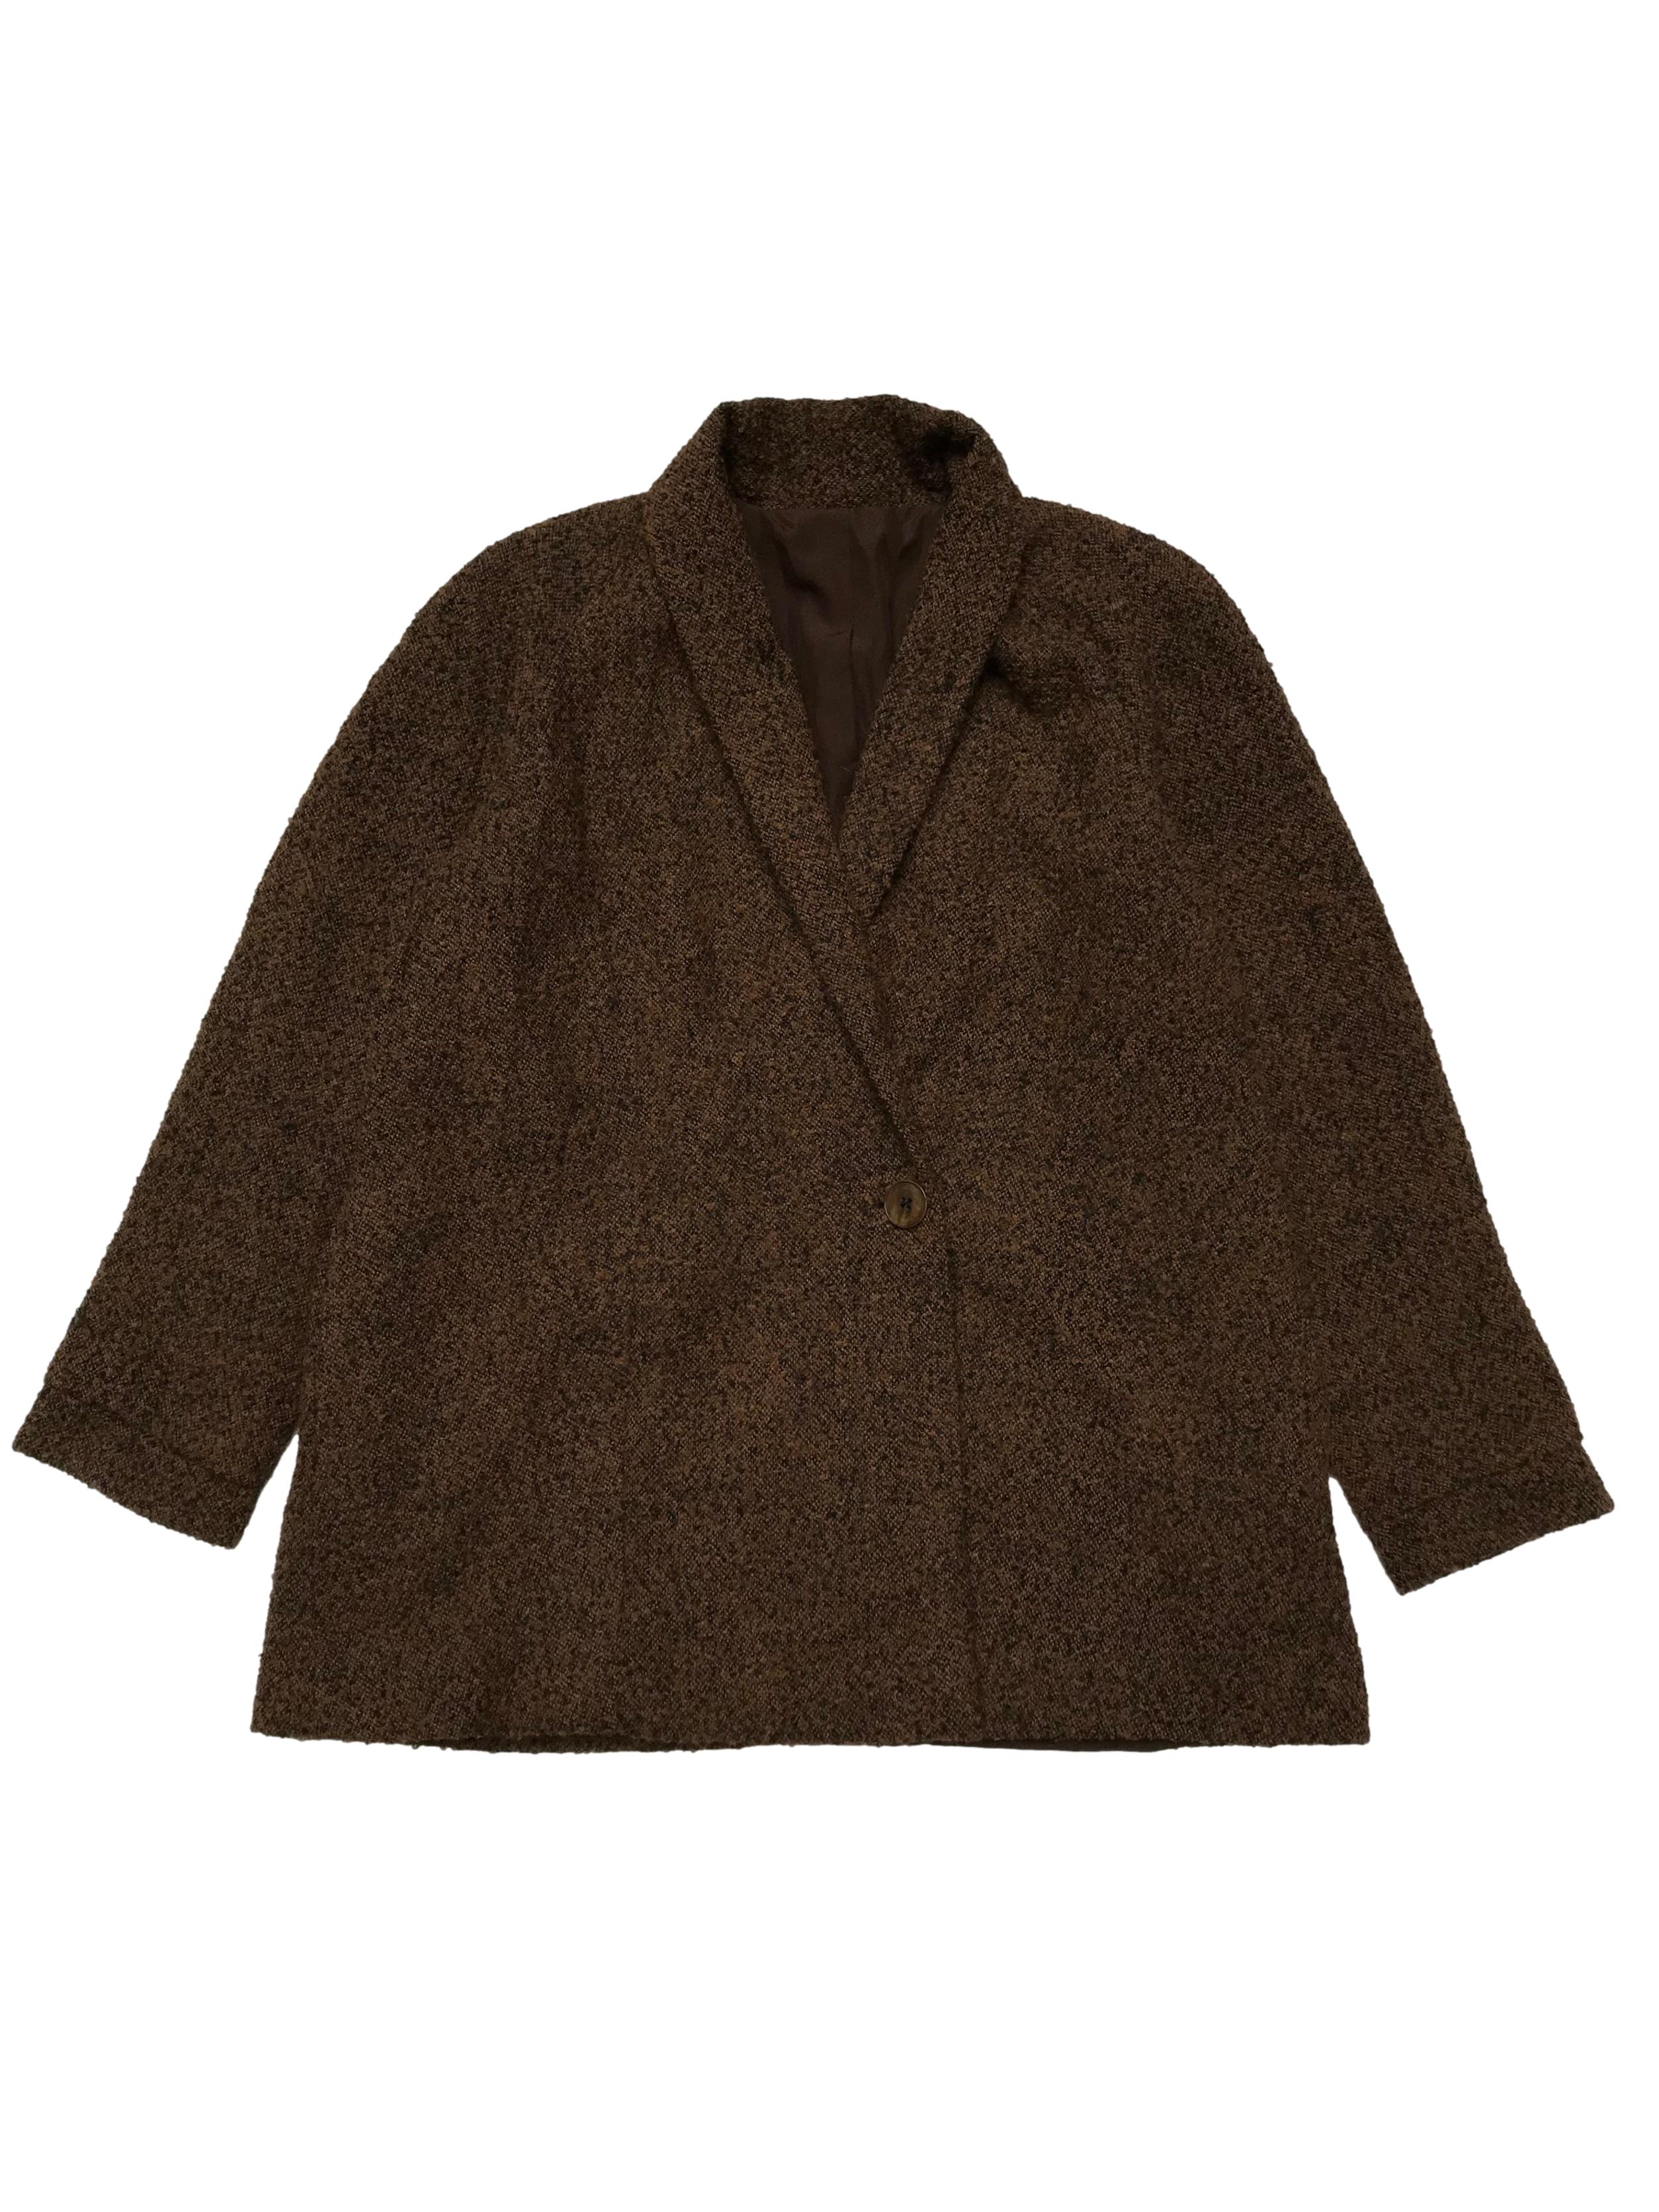 Abrigo de lana y alpaca marrón y negro, forrado, modelo cruzado con bolsillos laterales.  Ancho 120cm Largo 76cm